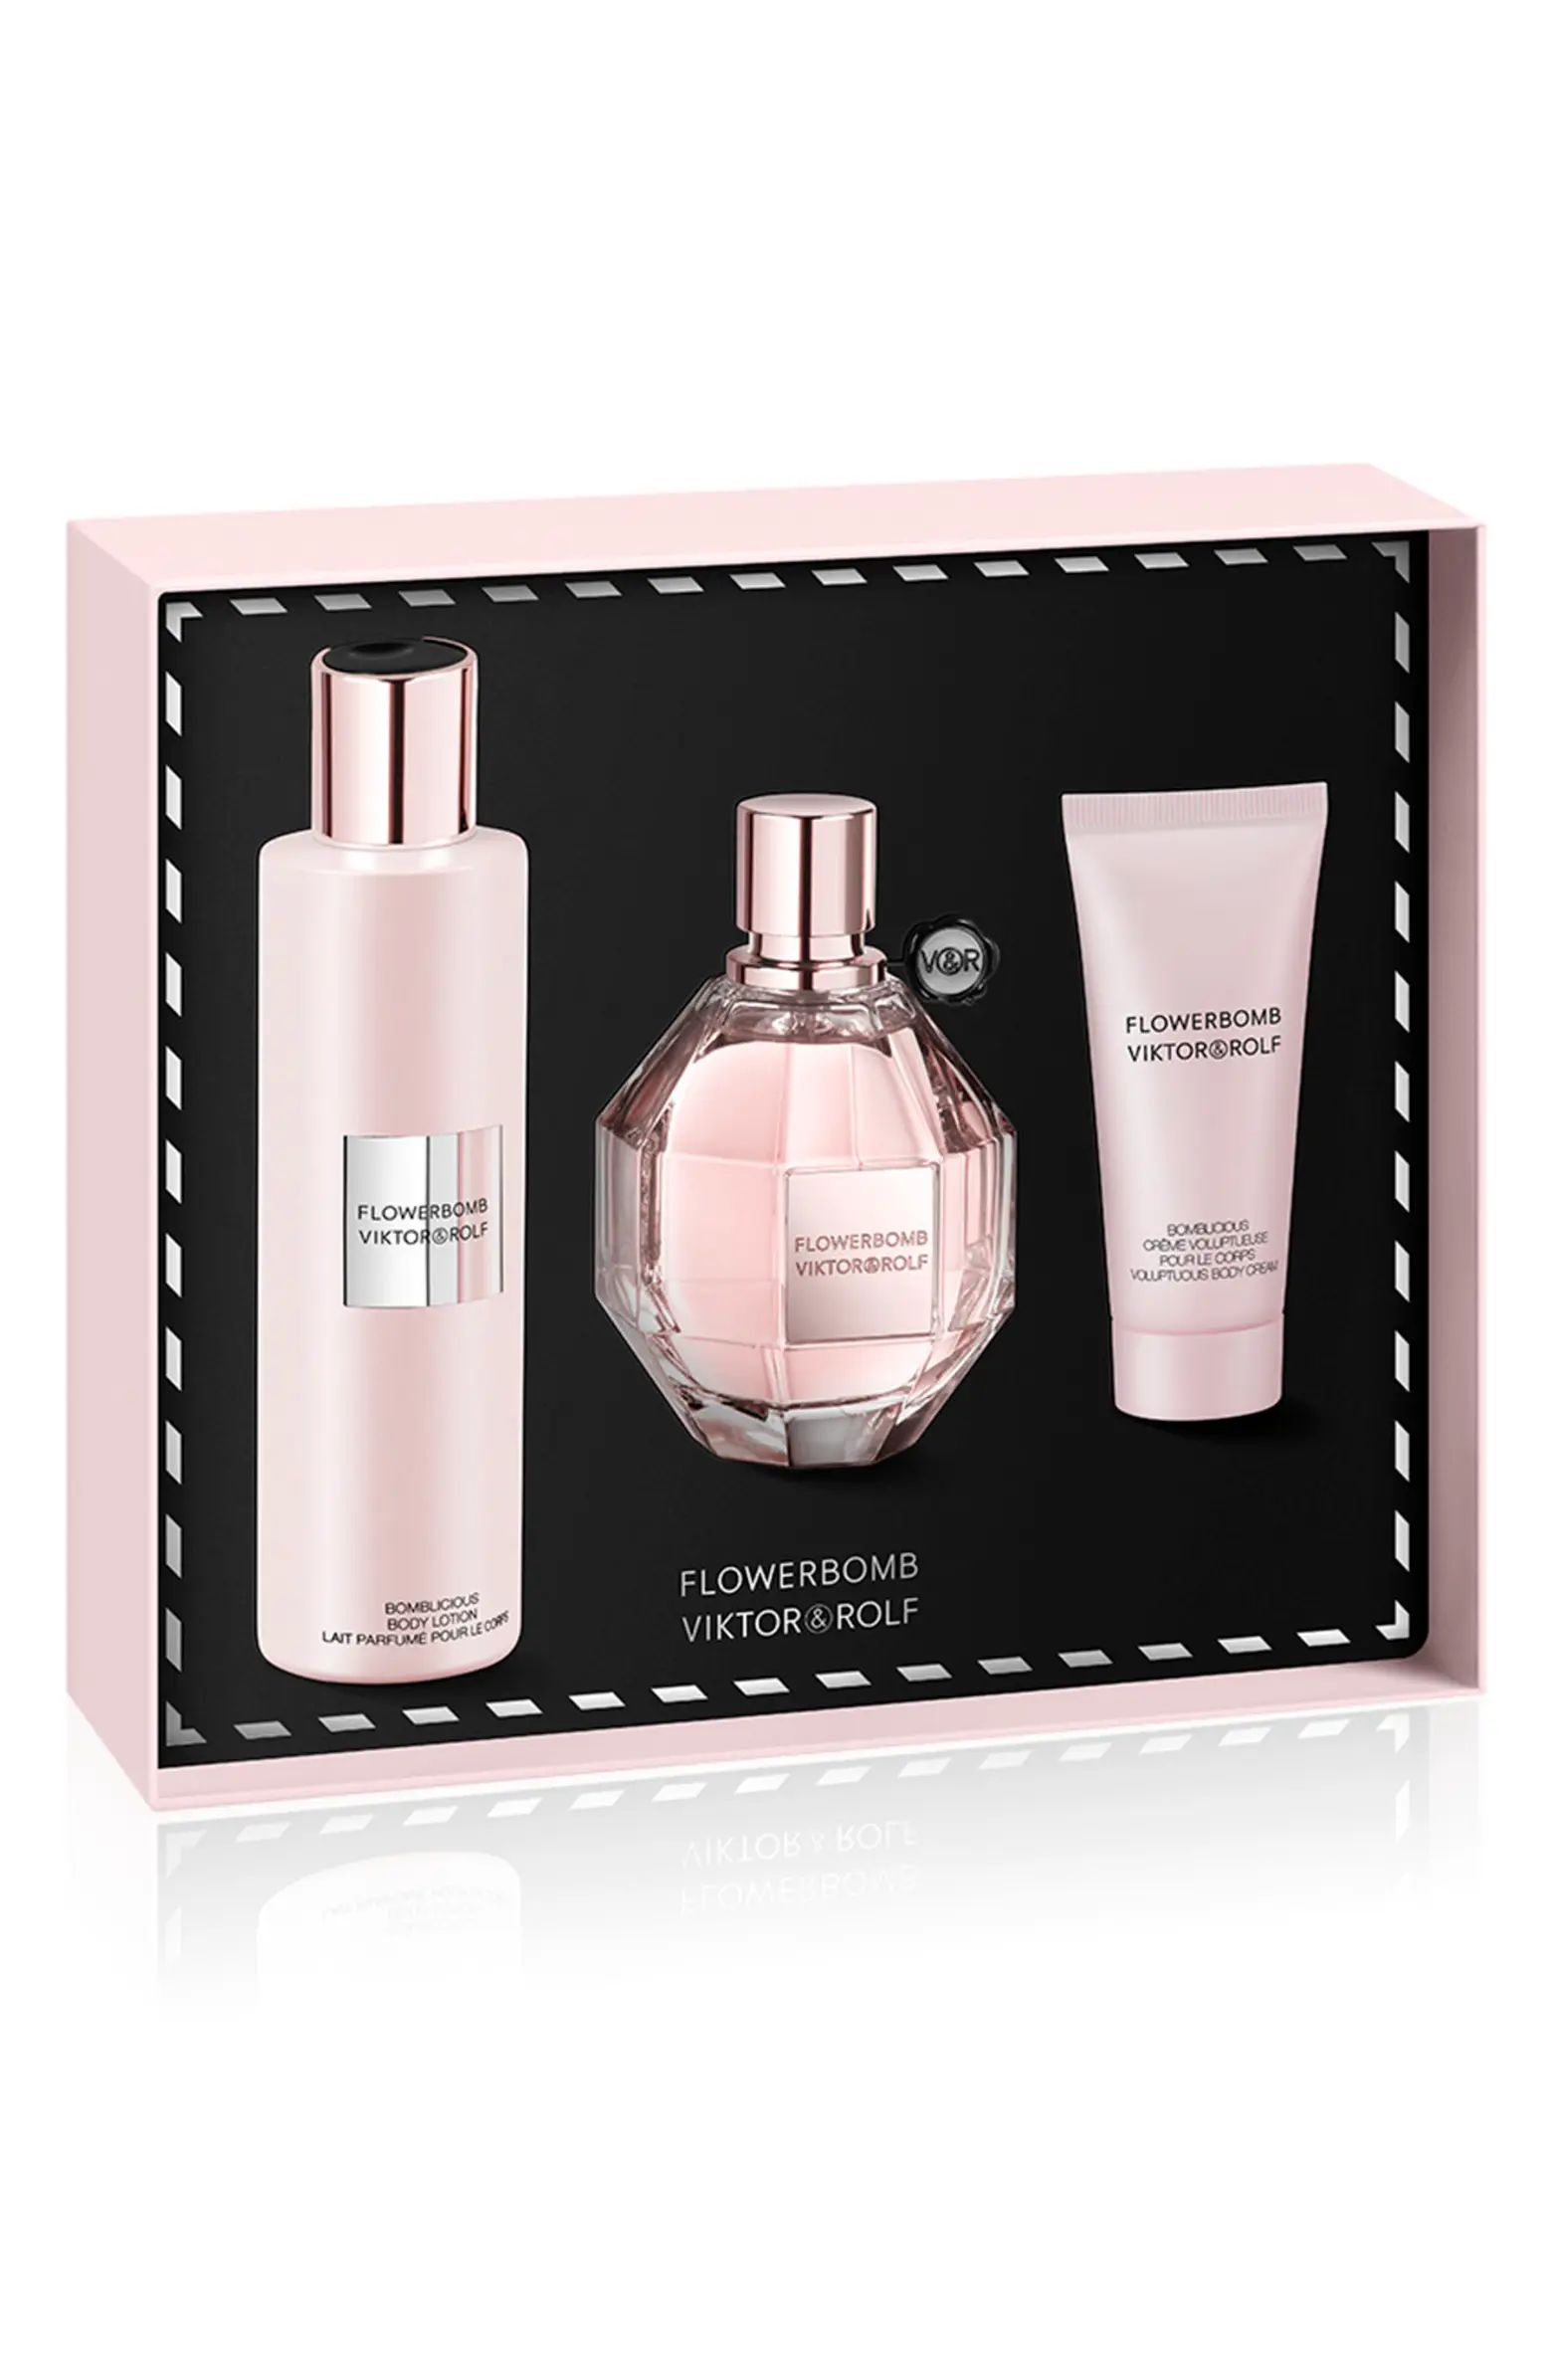 Flowerbomb Eau de Parfum Set $238 Value | Nordstrom